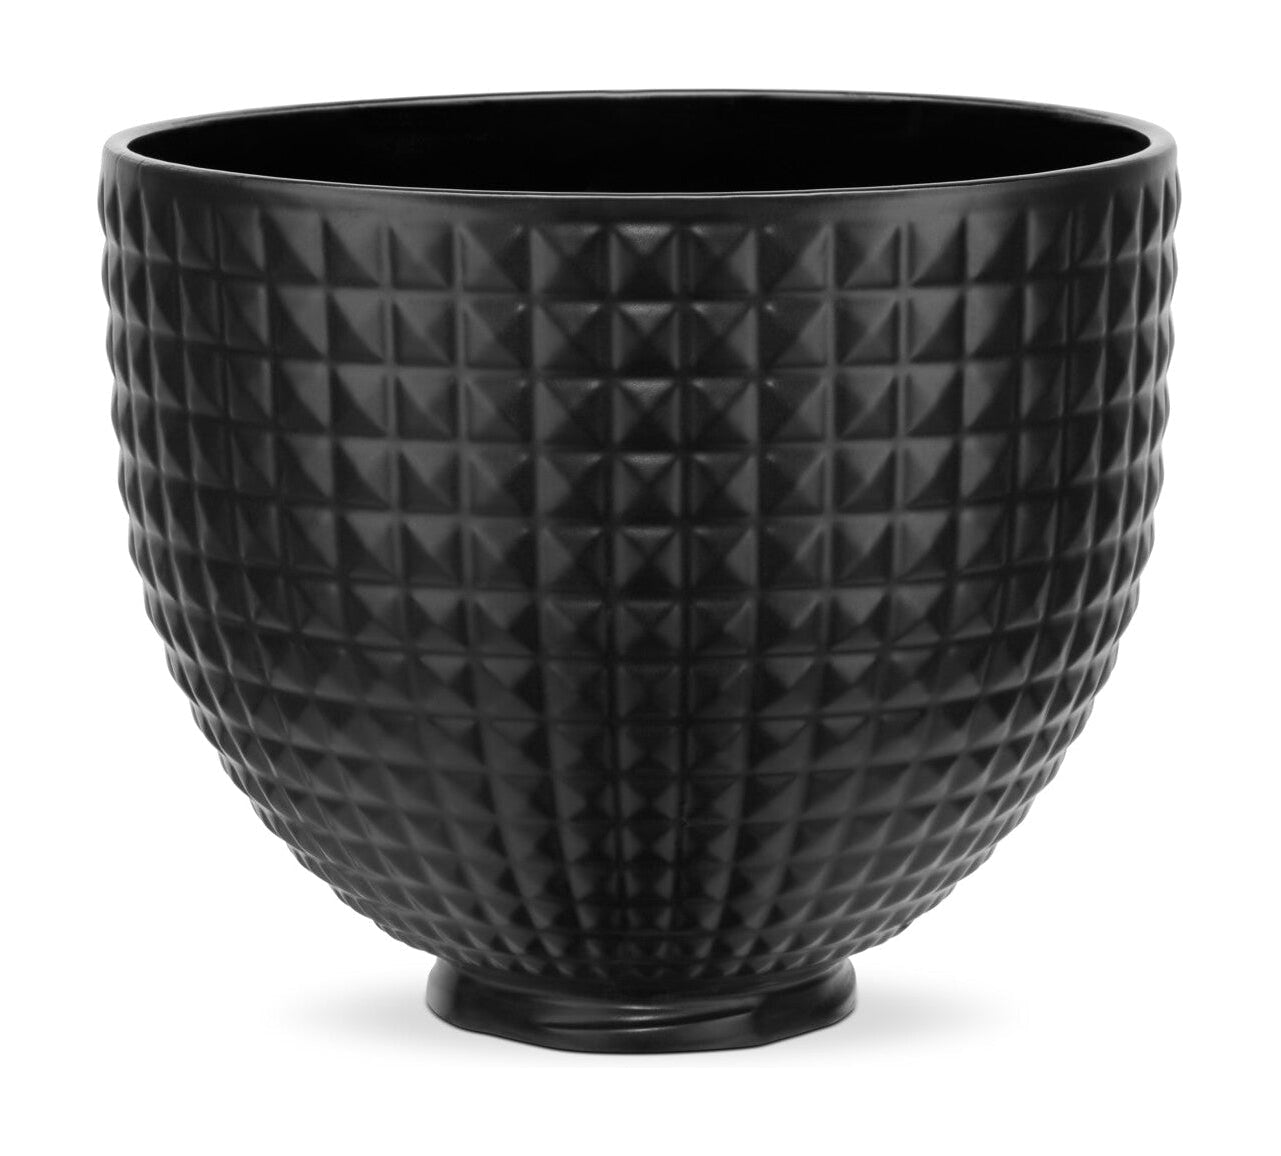 Tazón de cerámica de Aid de cocina 4.7 L, negro con tachuelas